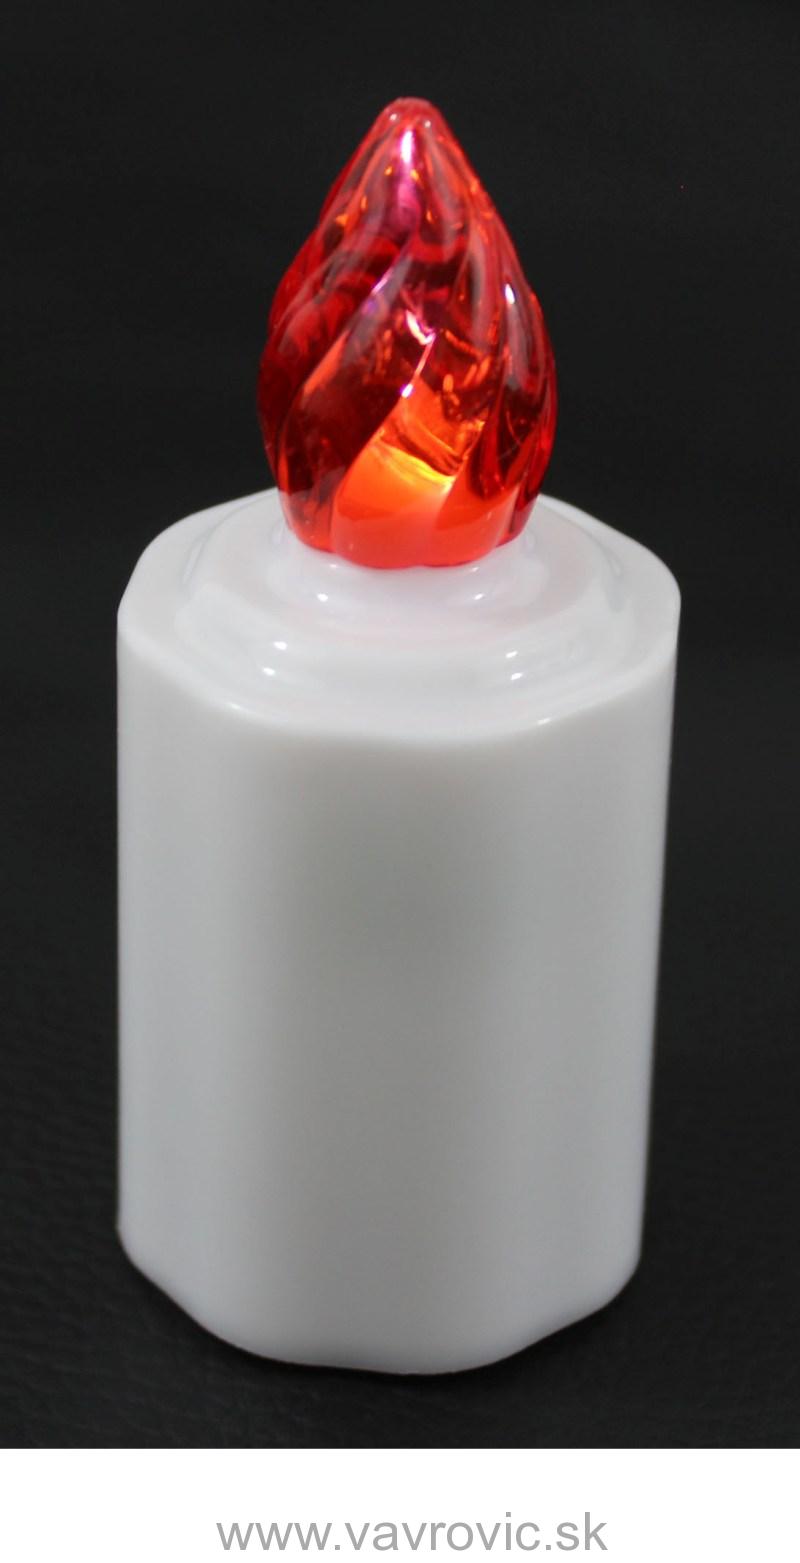 LED náhrobný kahanček ZE1 - červený